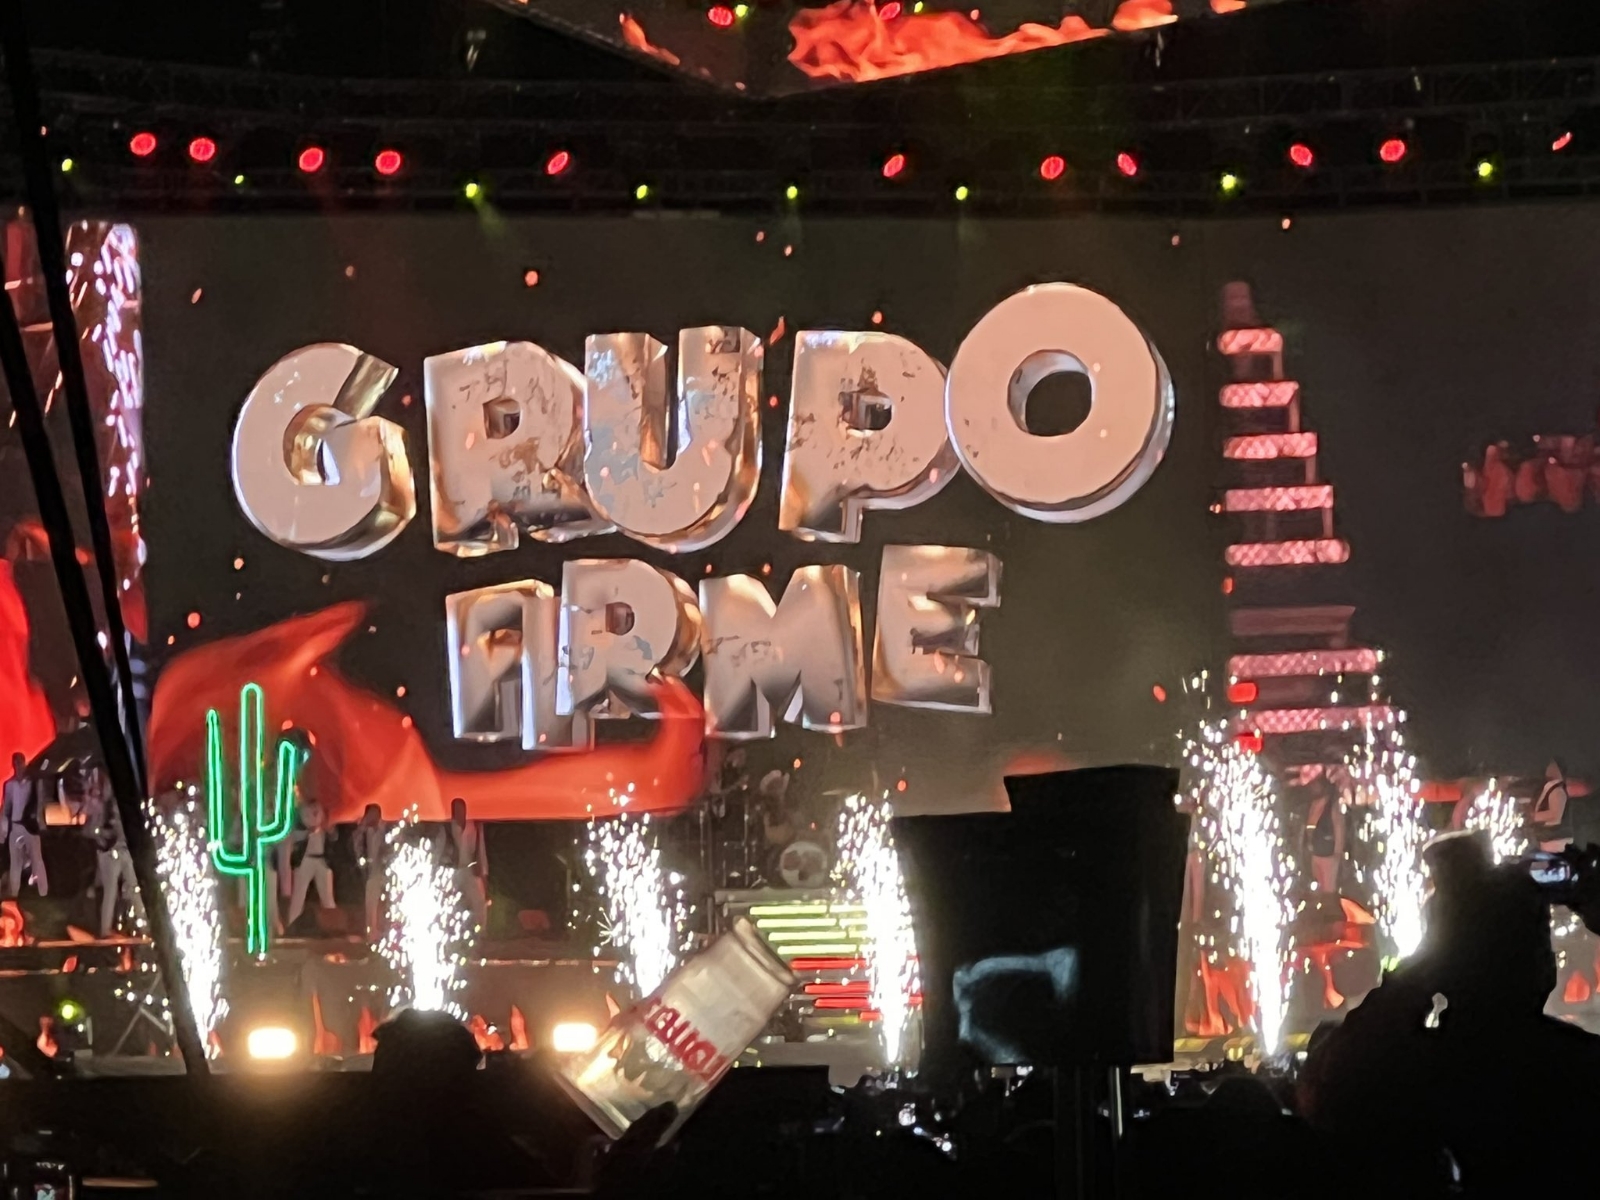 La banda presentó más de 20 canciones en su primer concierto en el Foro Sol de la Ciudad de México